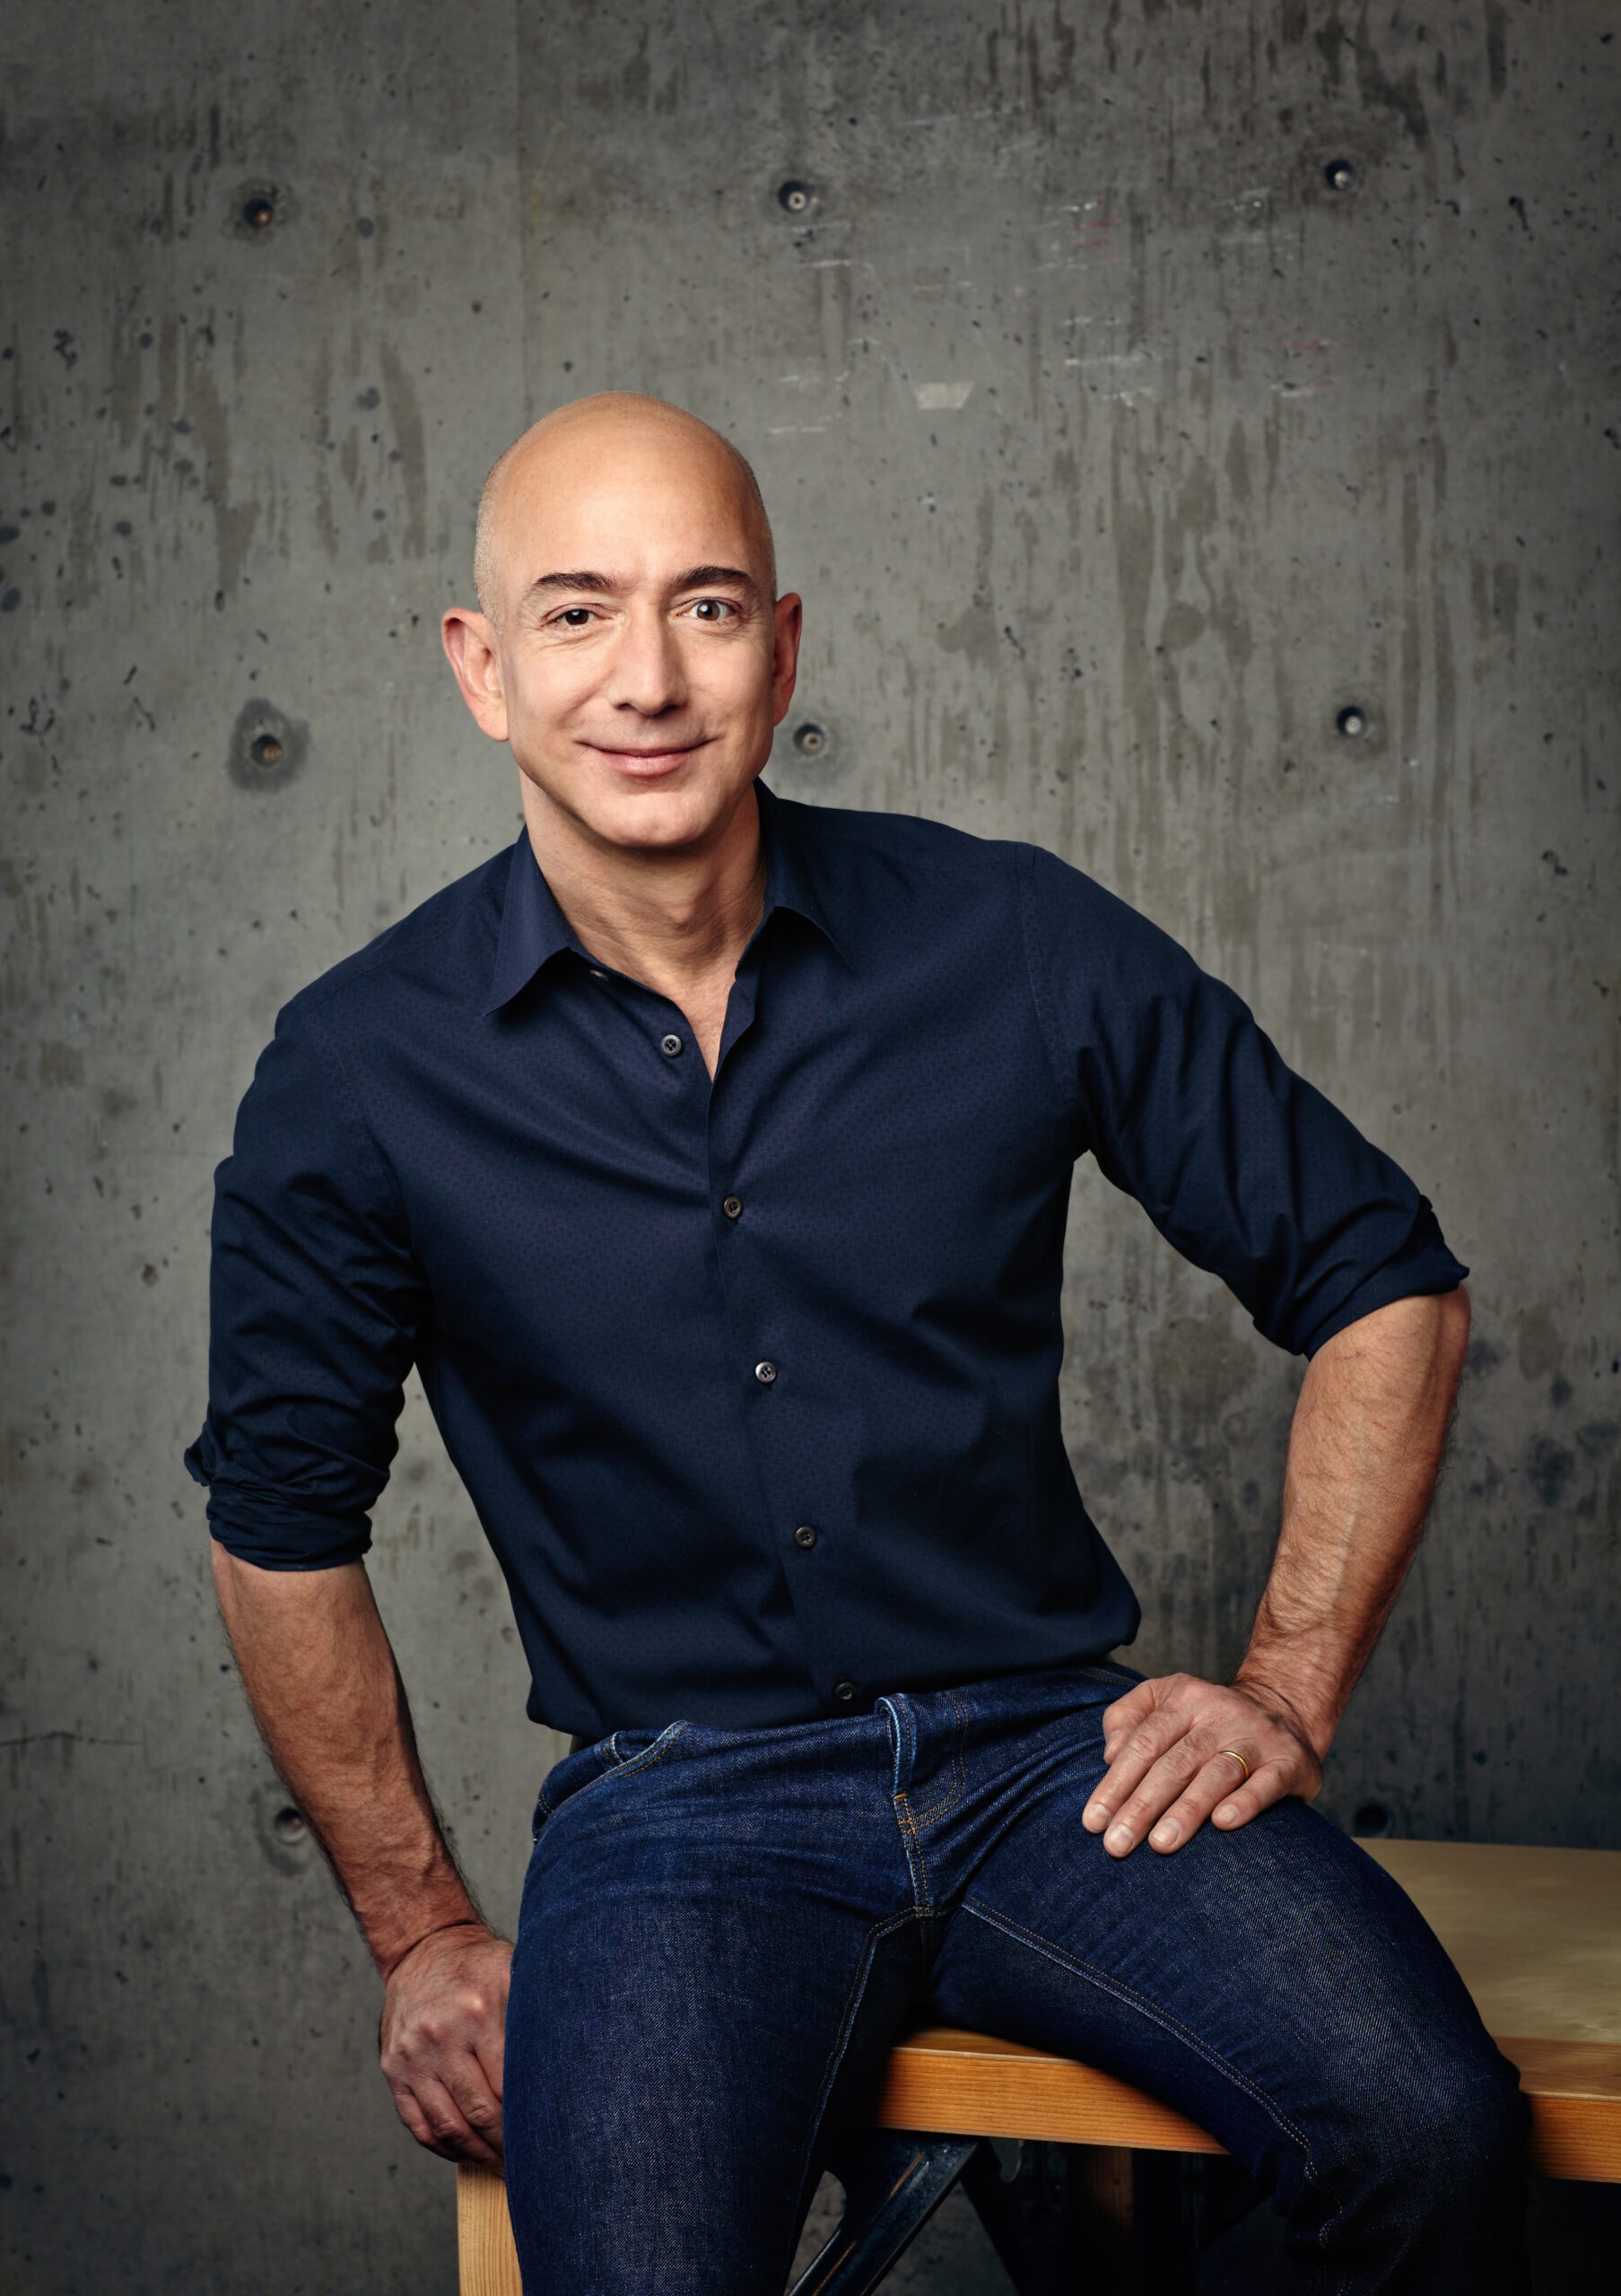 Jeff Bezos ist der Amazon-Gründer